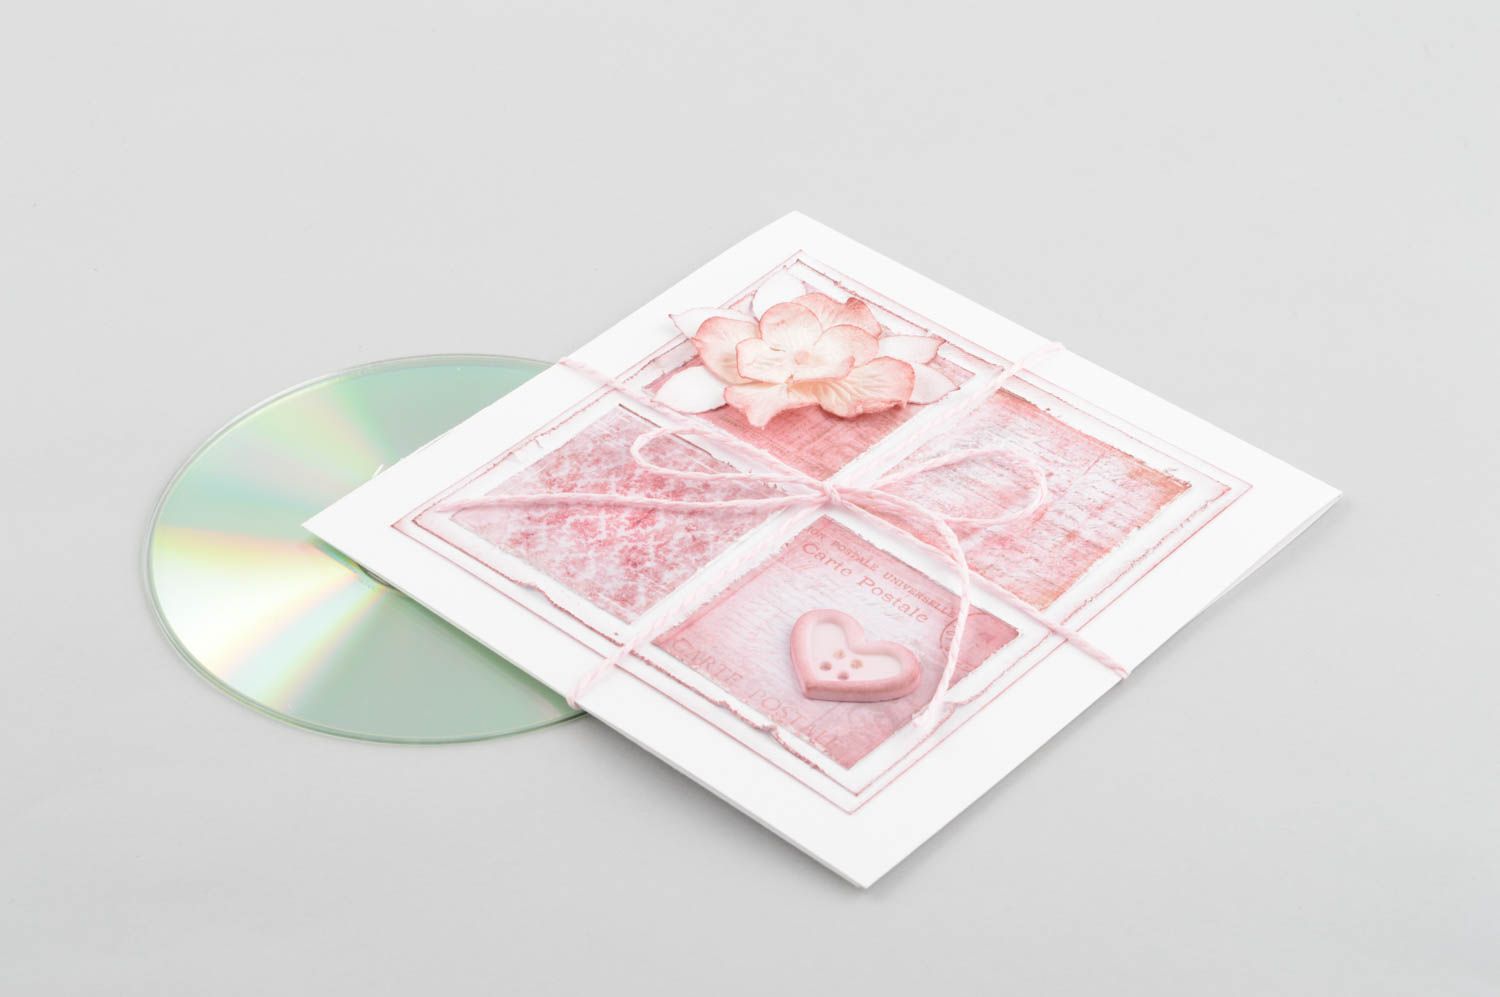 Handmade Papier CD Hülle kreatives Geschenk schöne Verpackung rosa hübsch foto 2